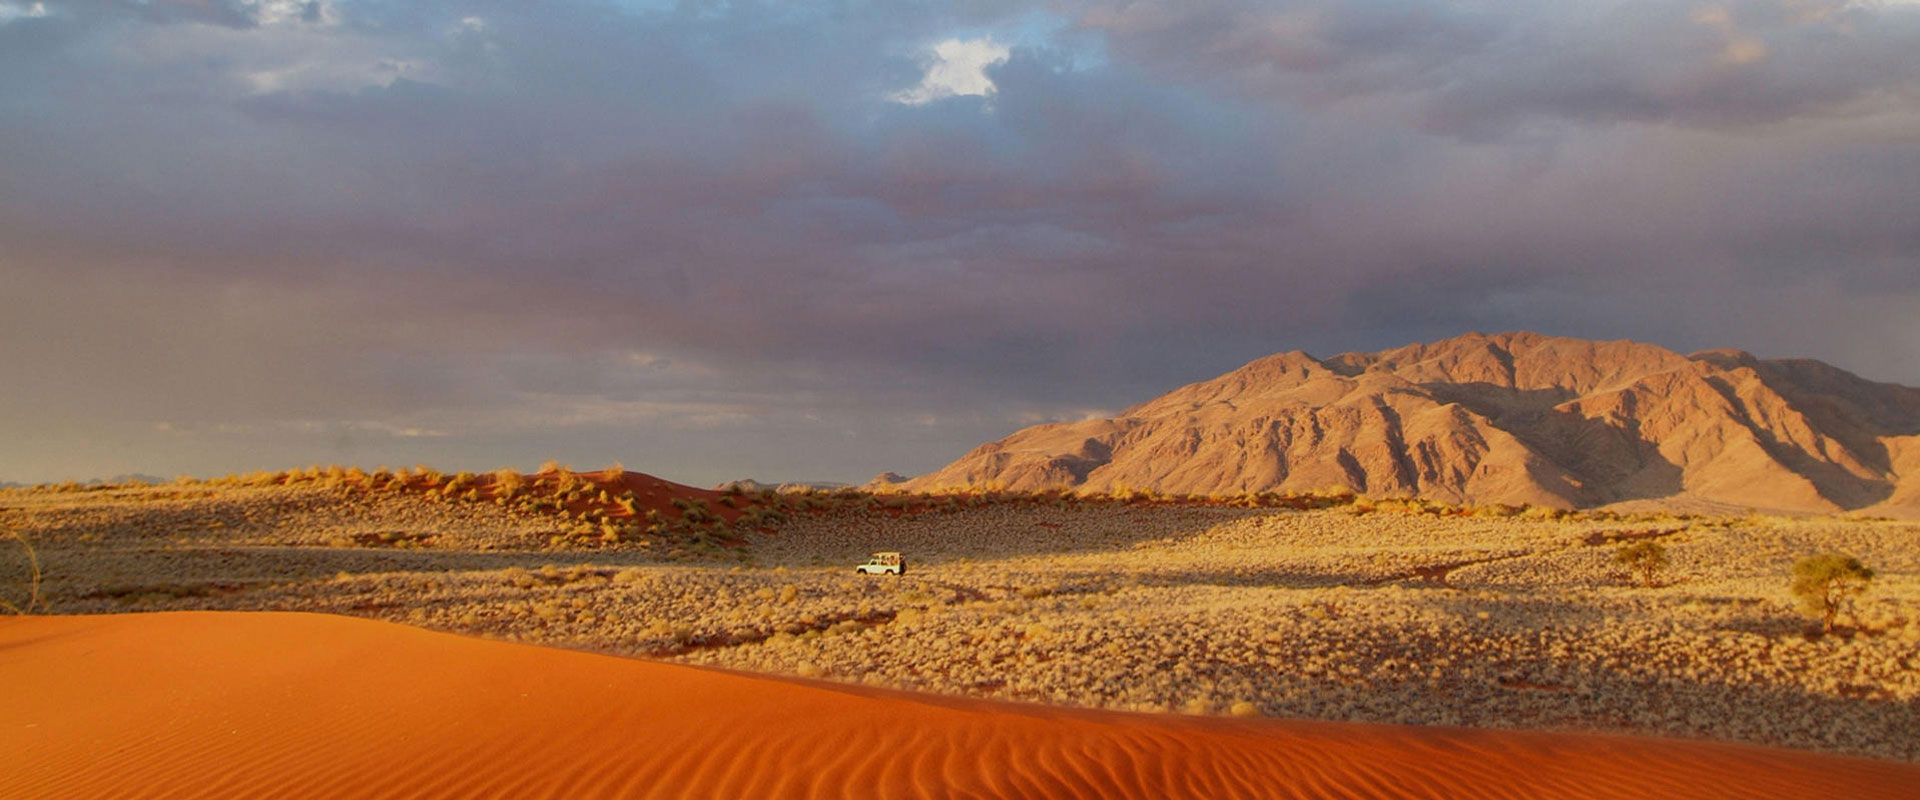 Sossusvlei & The Namib Desert